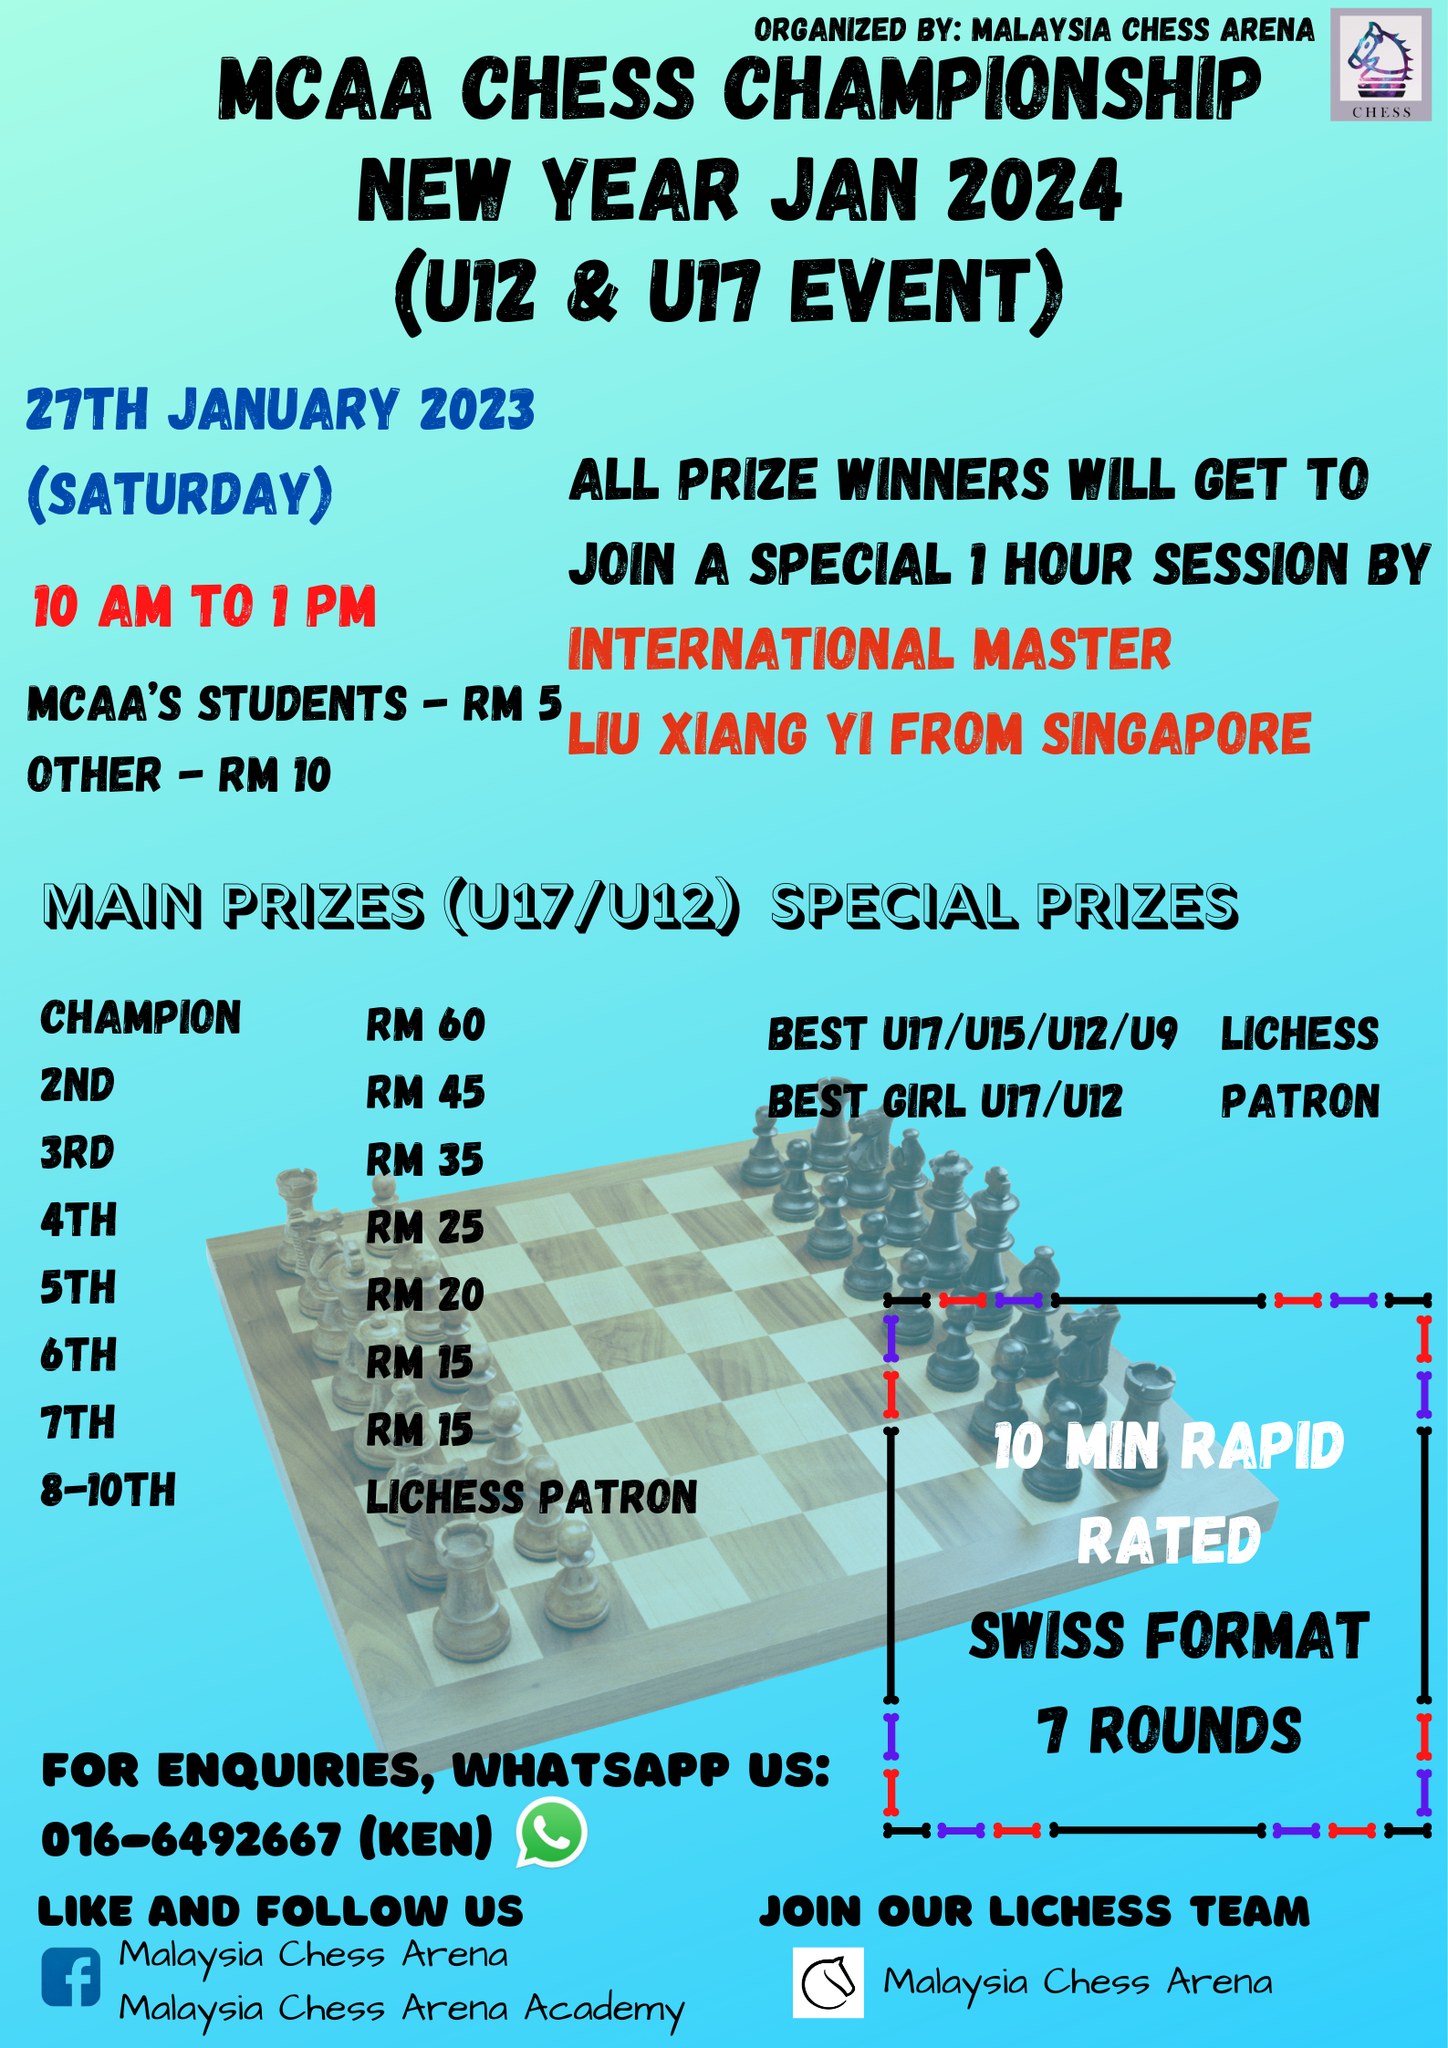 MCAA Chess Championship New Year Jan 2024 U12 & U17 event (Lichess